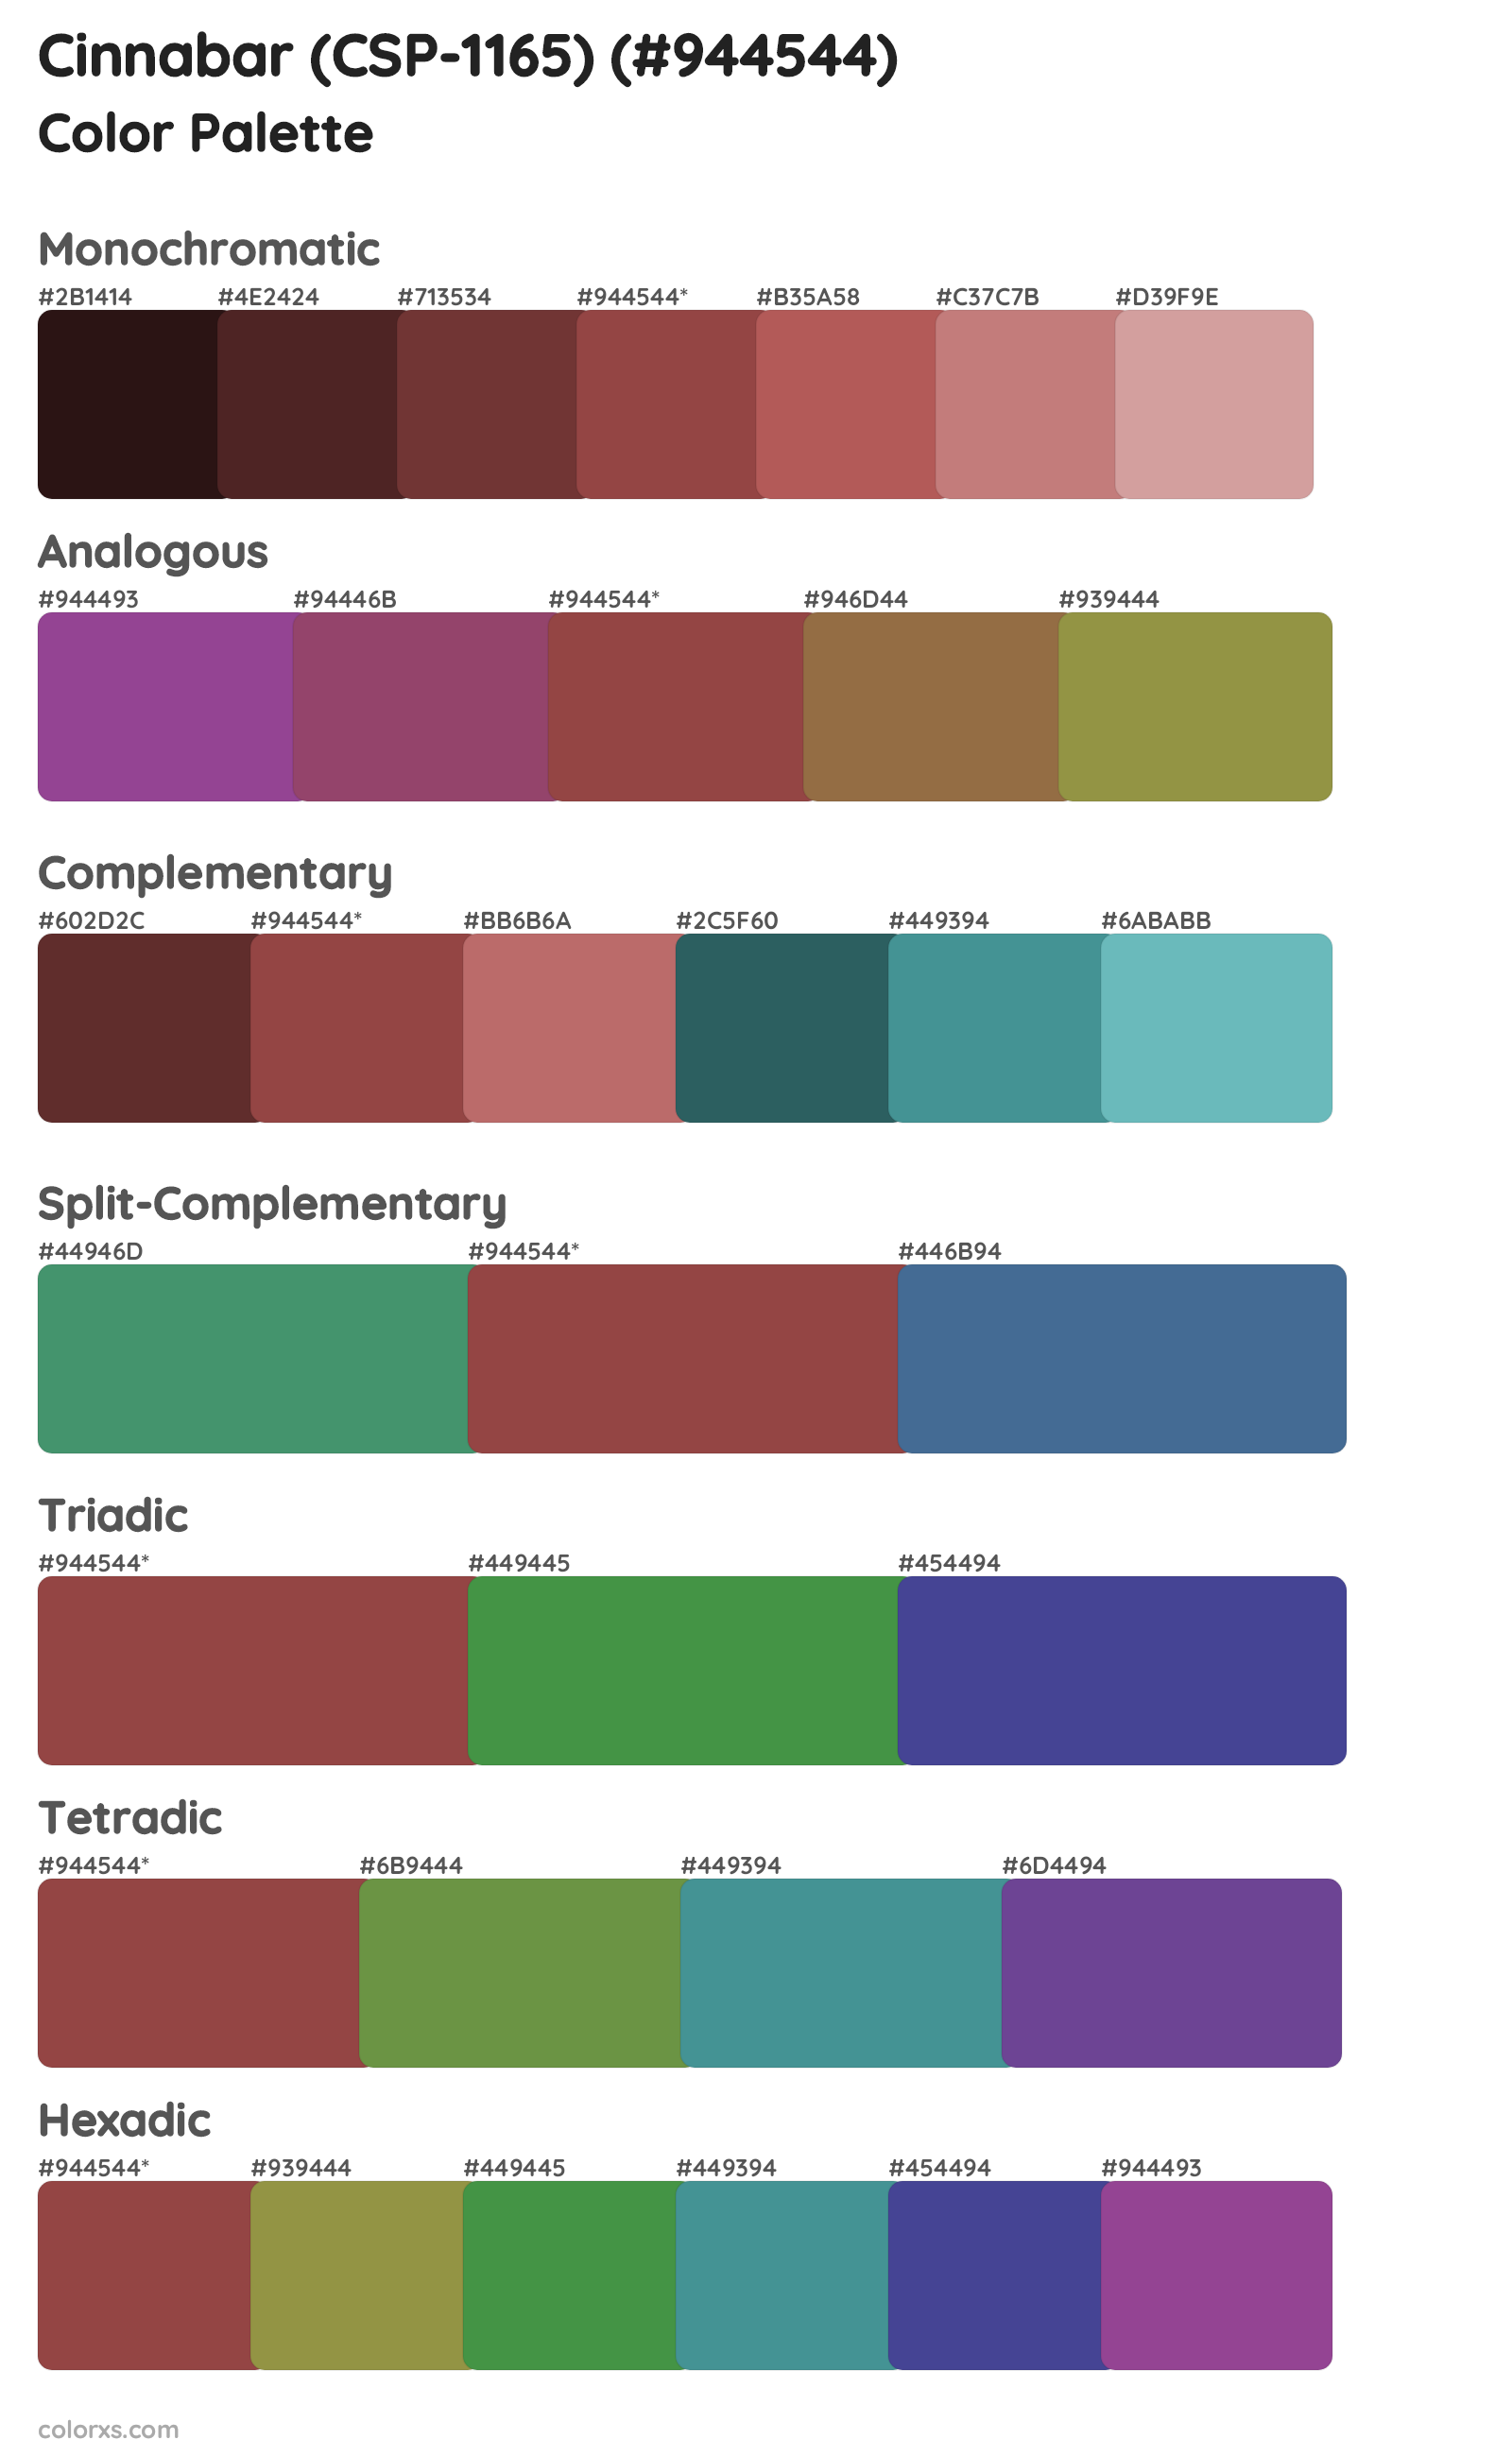 Cinnabar (CSP-1165) Color Scheme Palettes